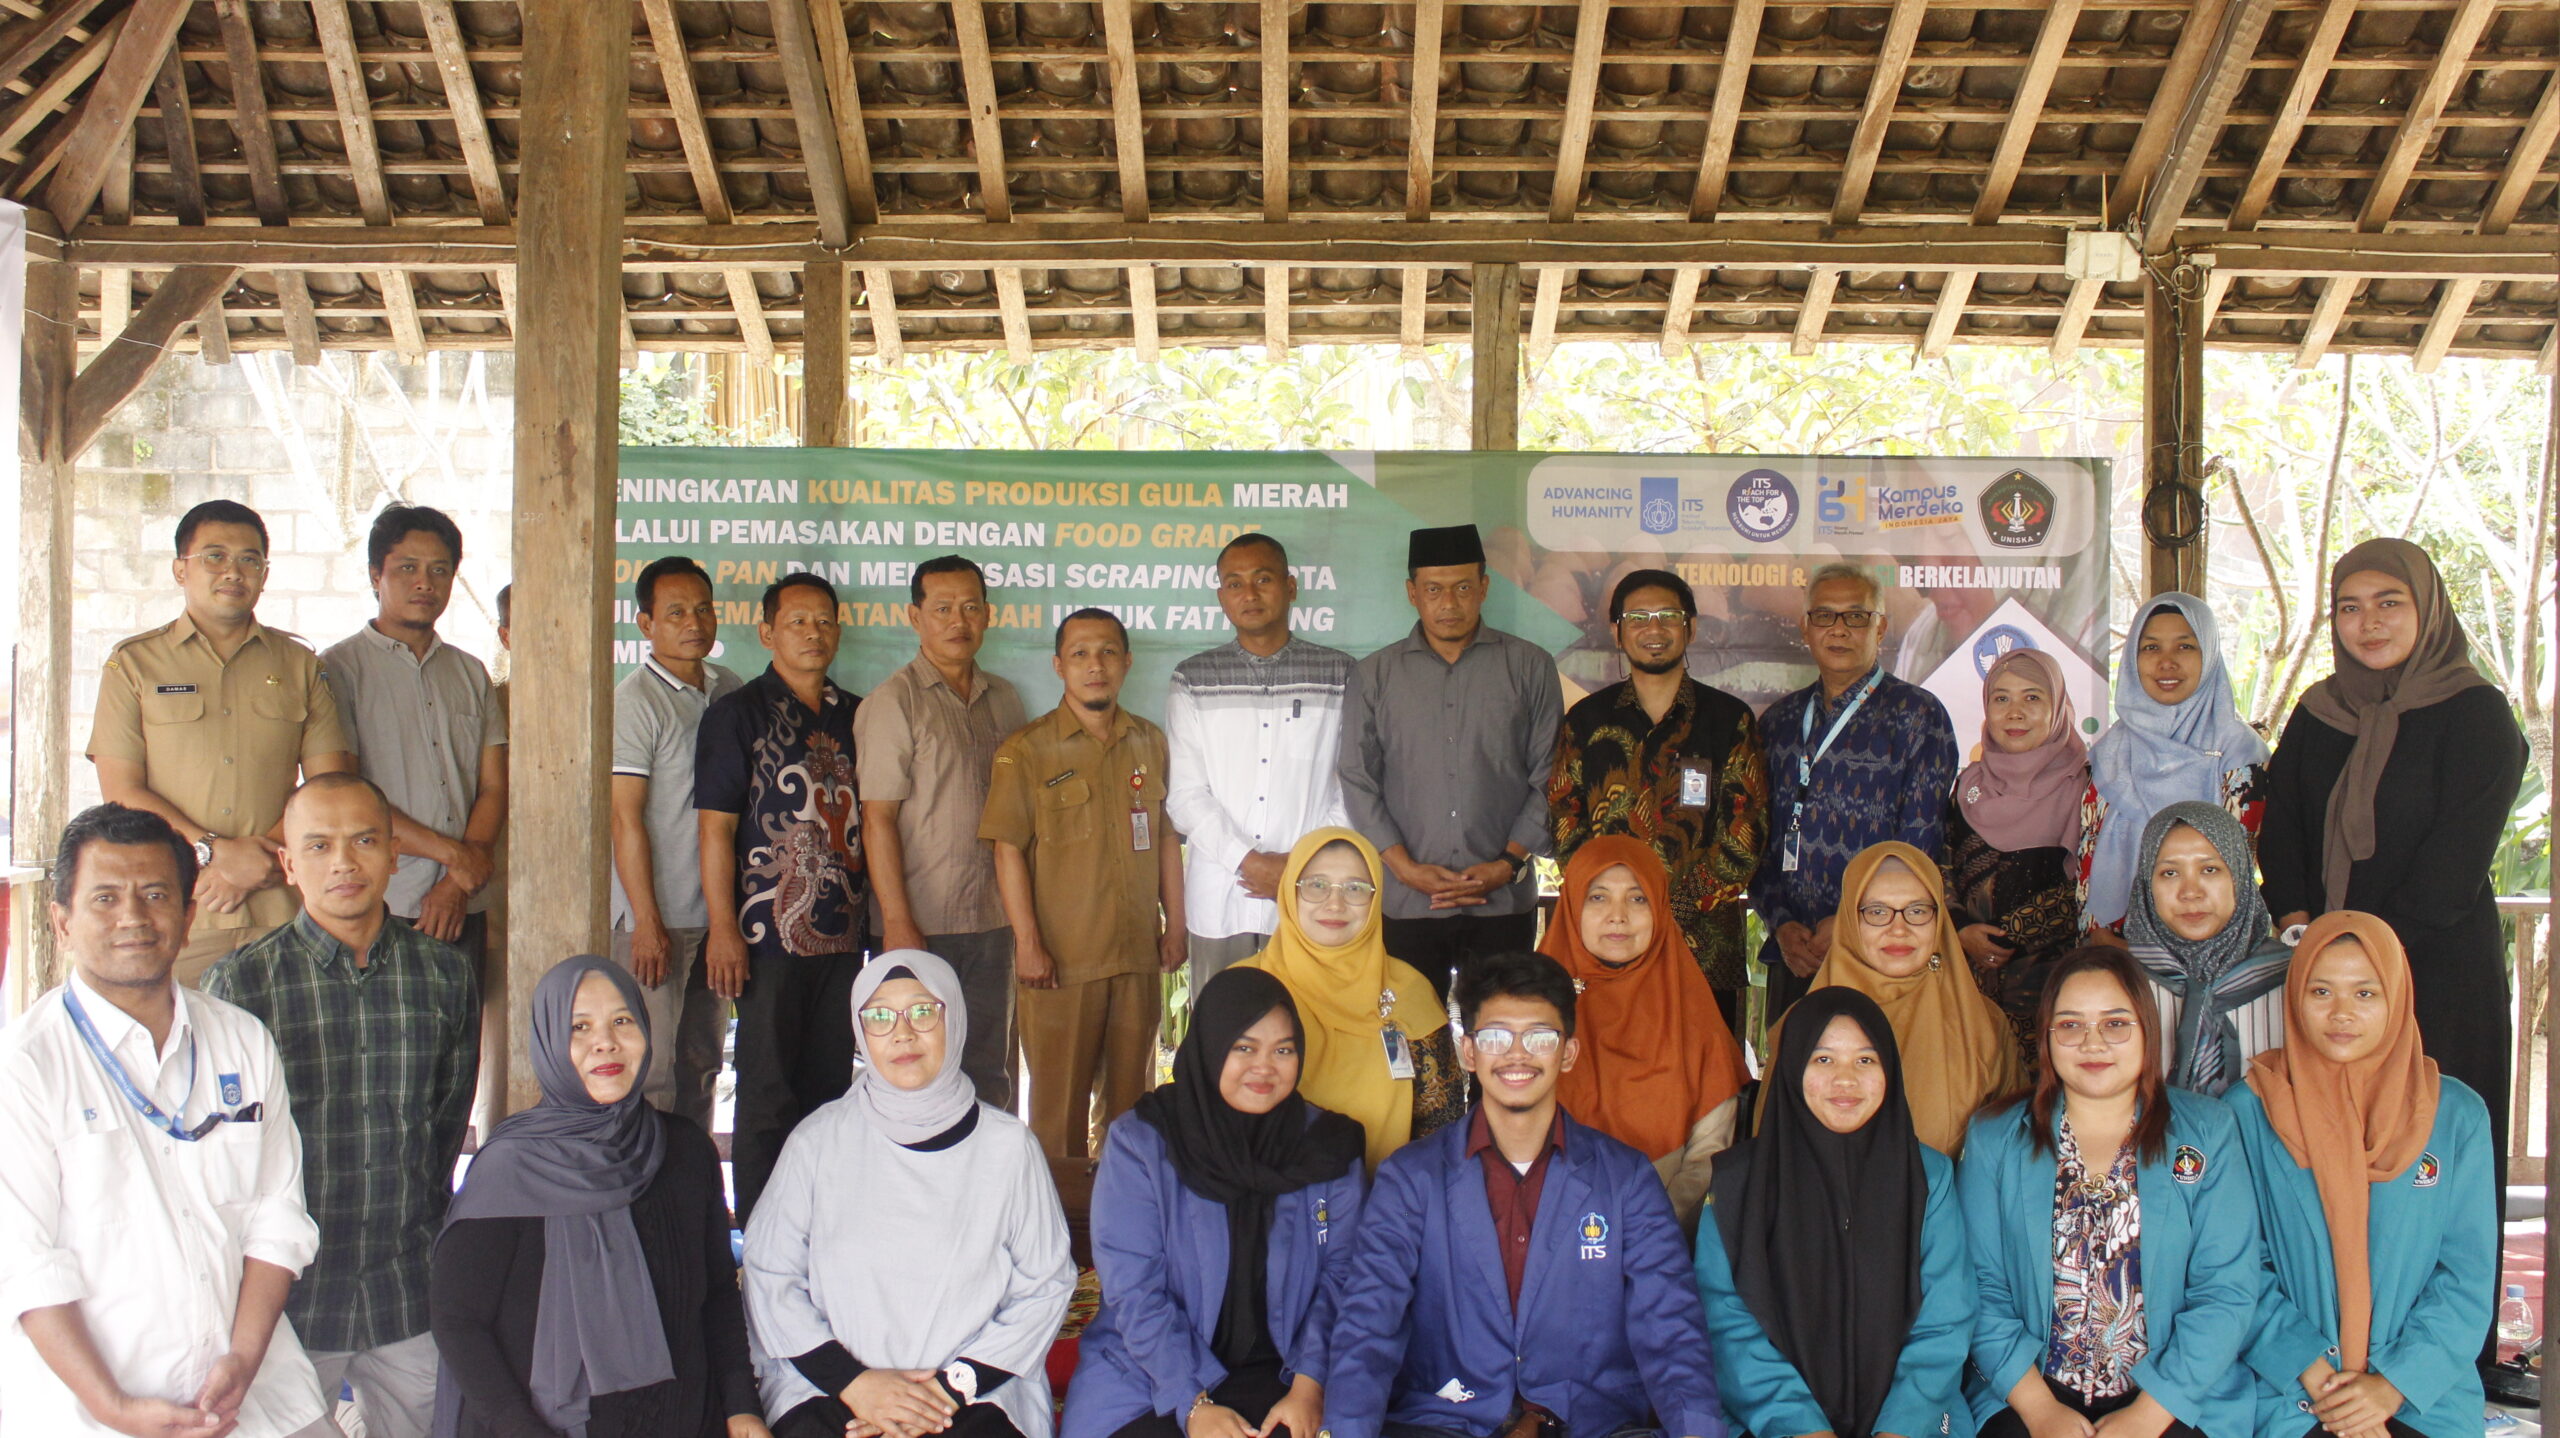 Foto bersama tim KKN ITS dengan tim KKN UNISKA, Dispertabun Kabupaten Kediri, dan pengrajin gula merah Kecamatan Mojo